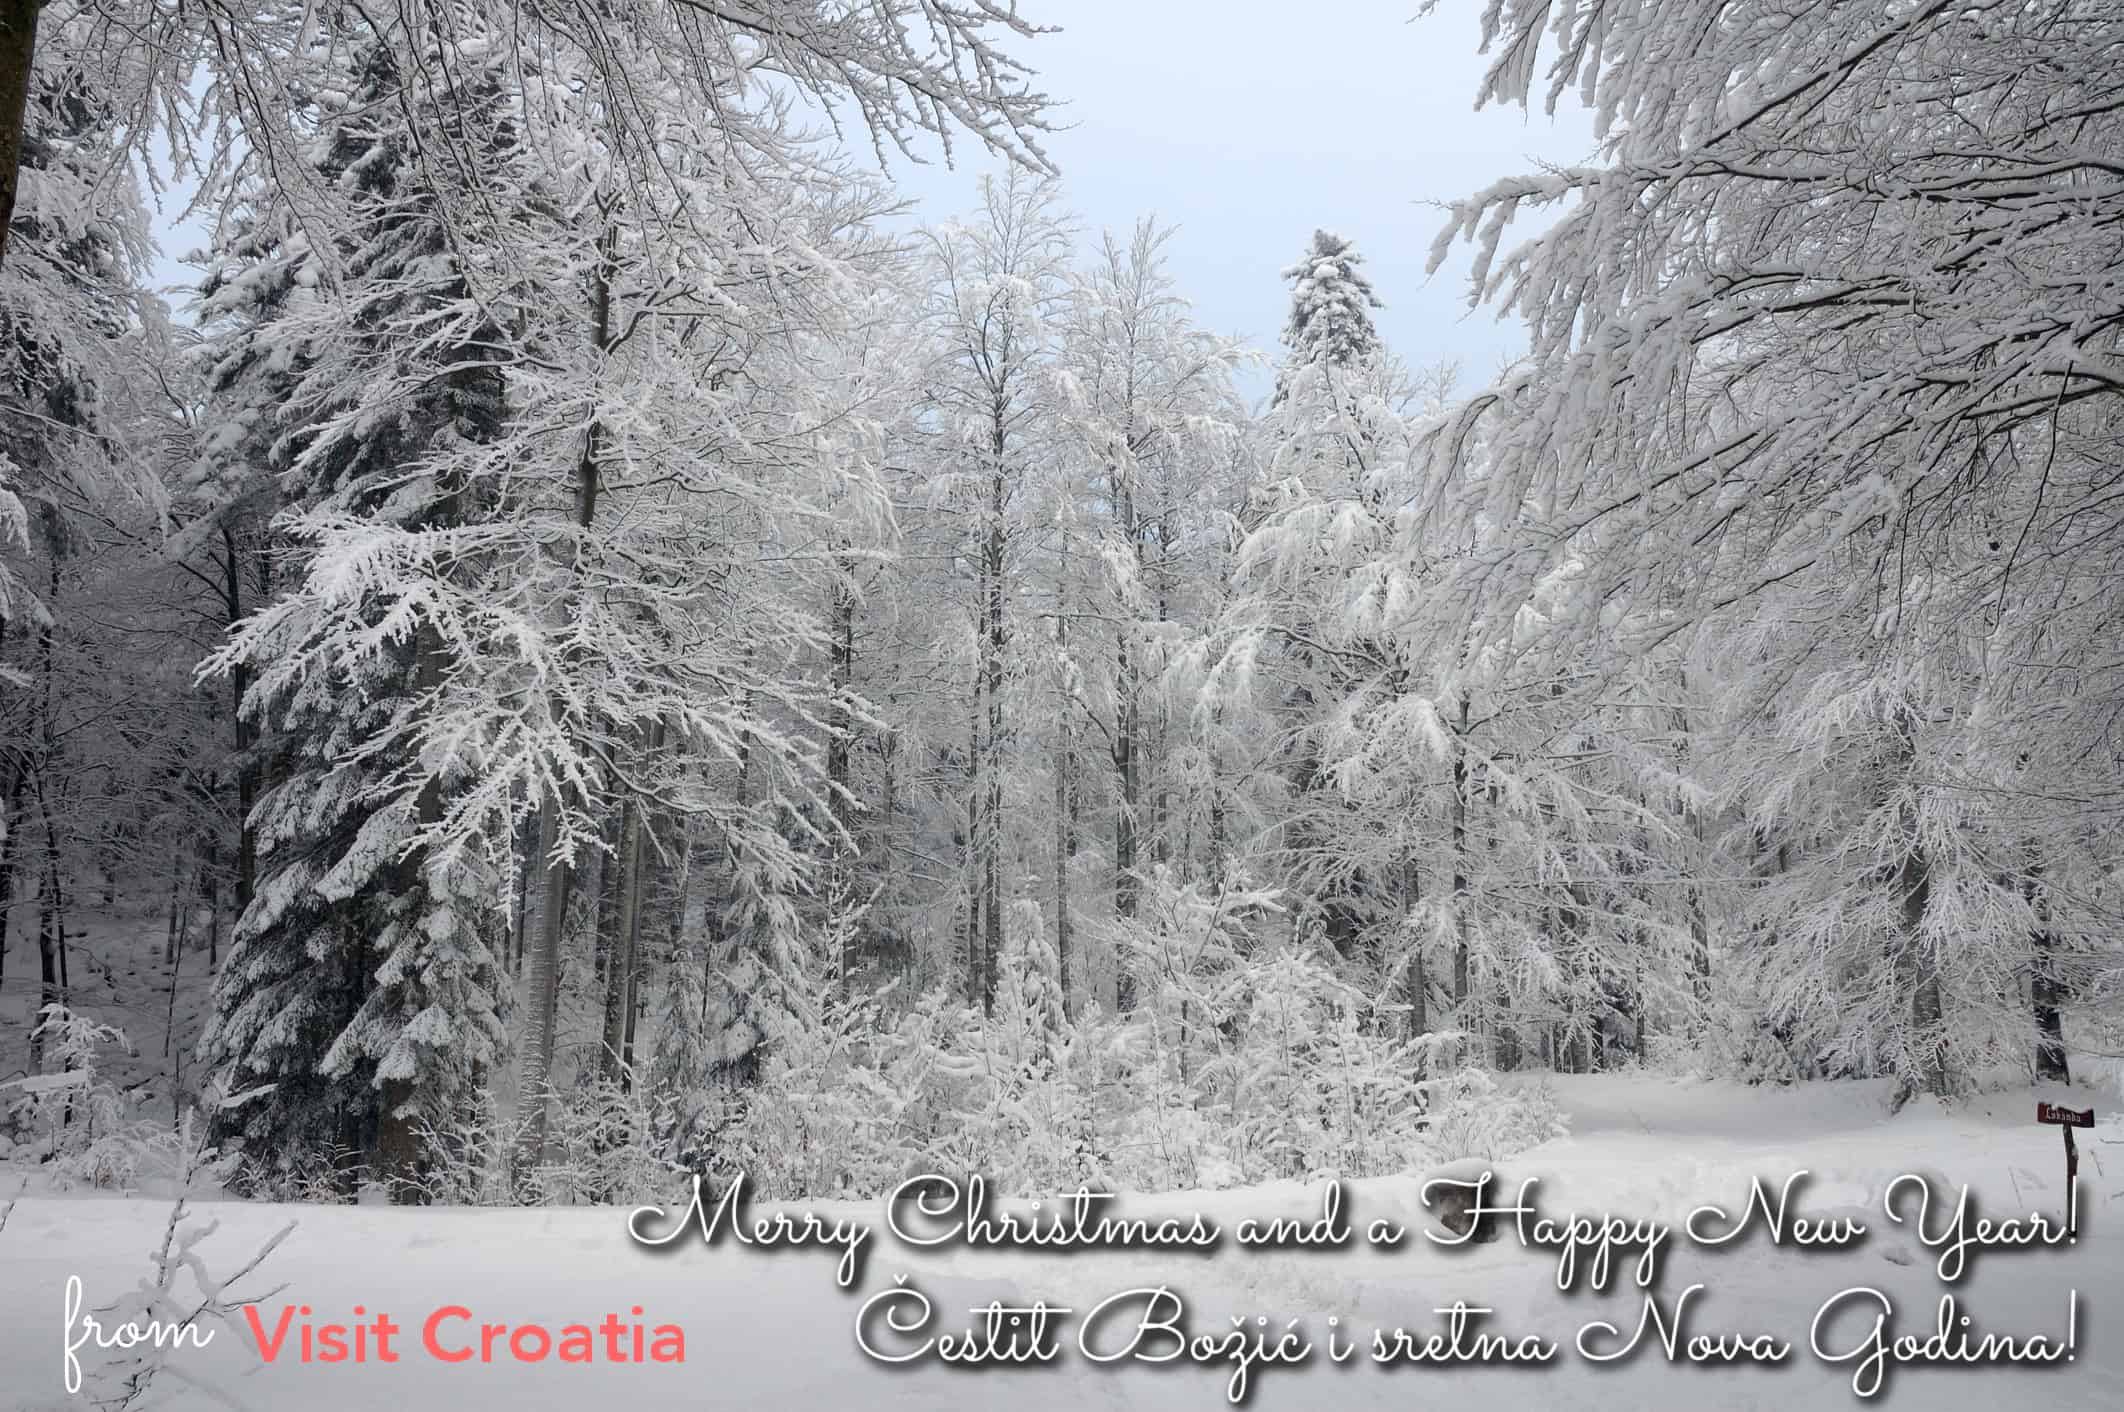 Visit Croatia Season's Greetings